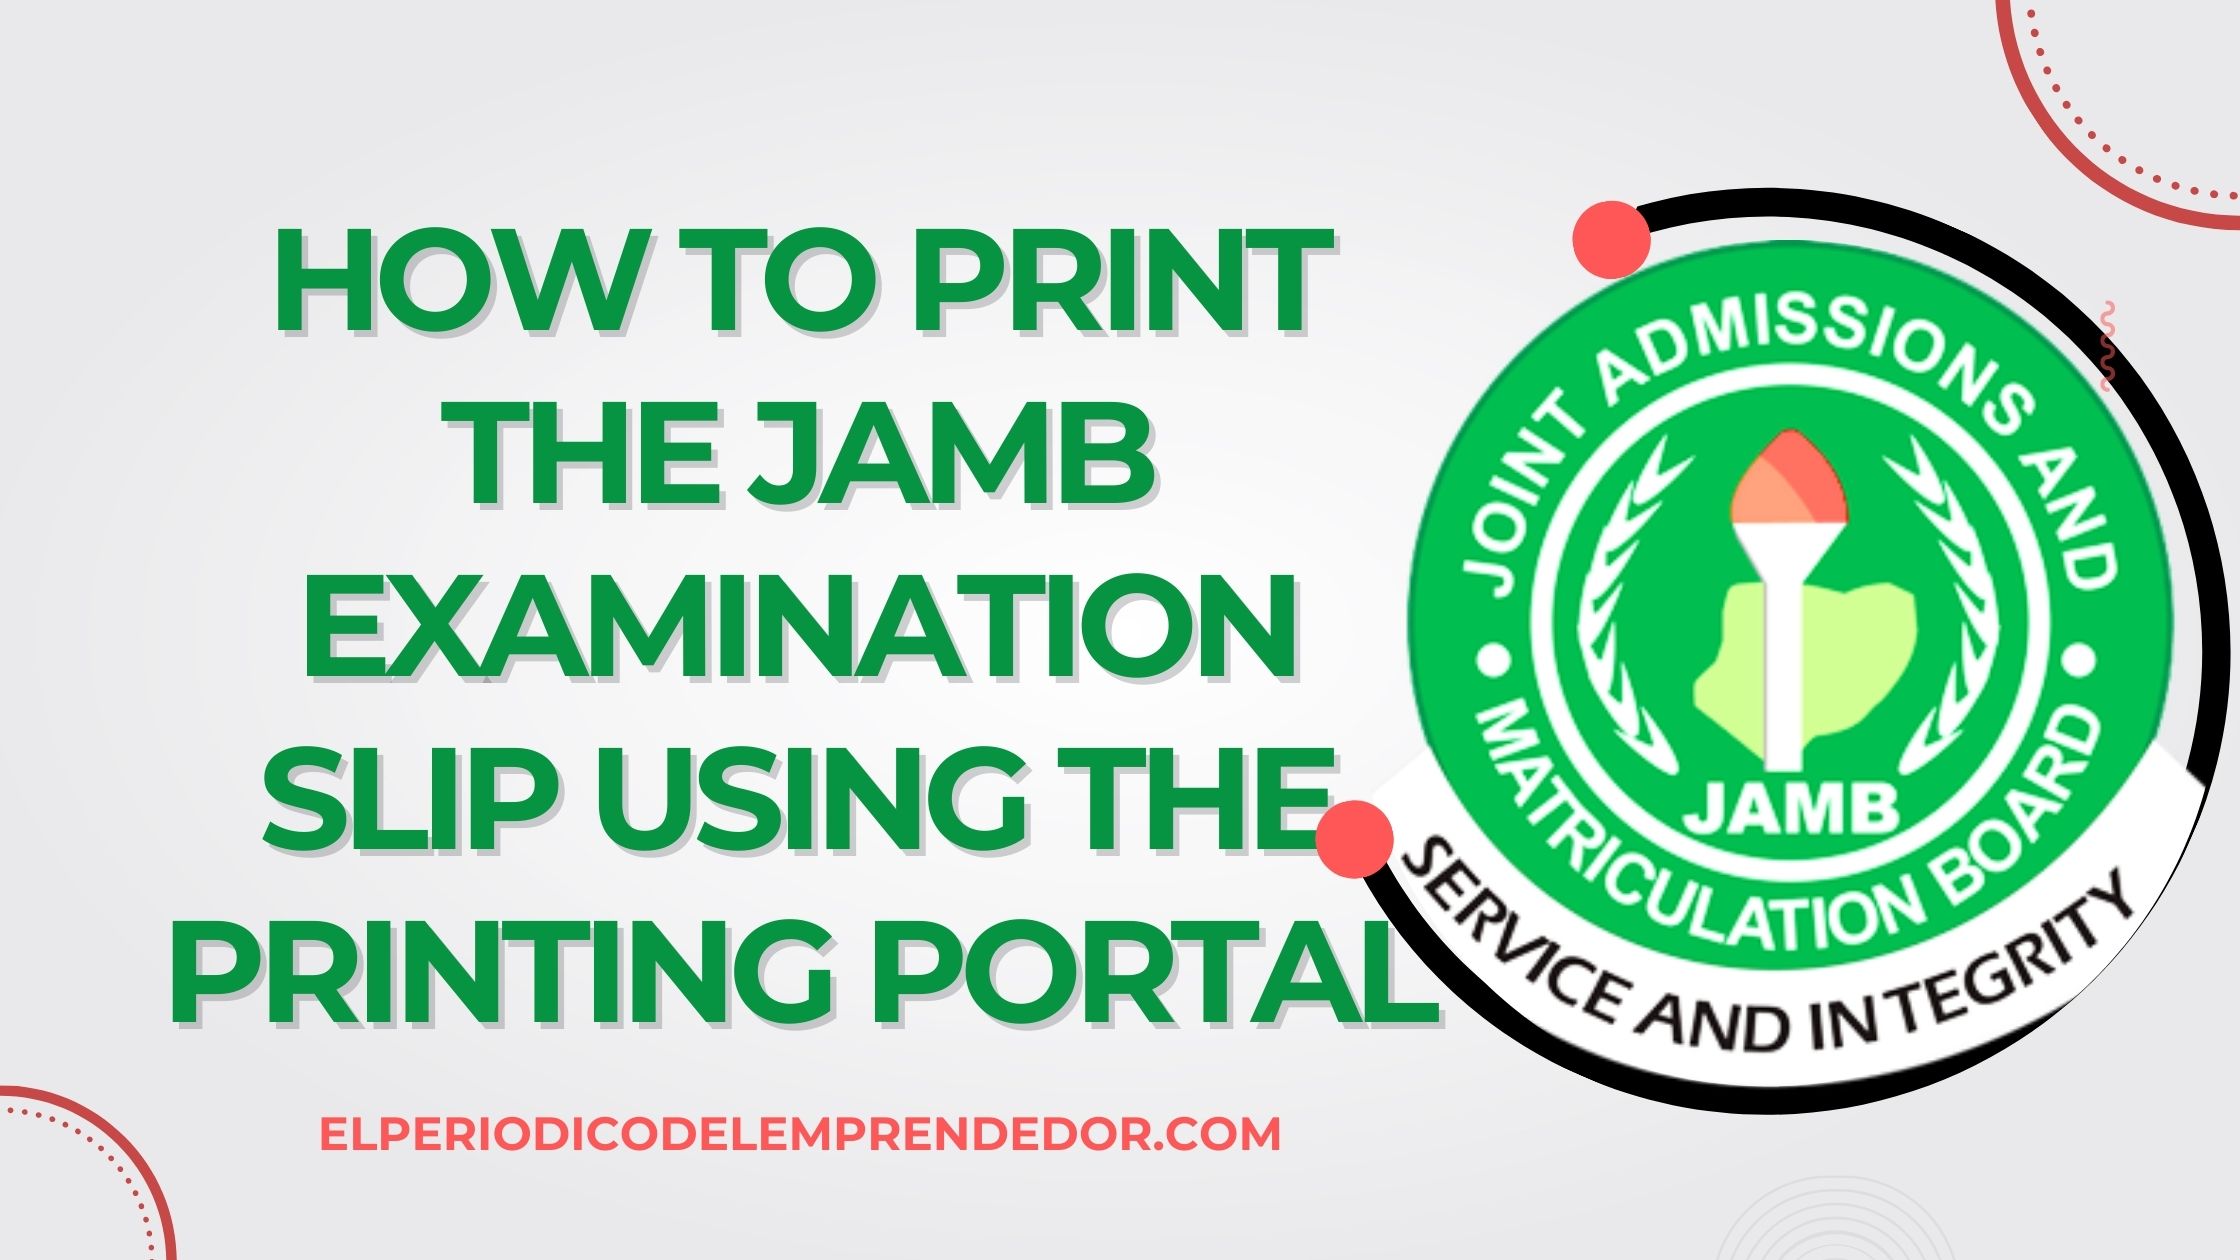 JAMB examination slip printing portal